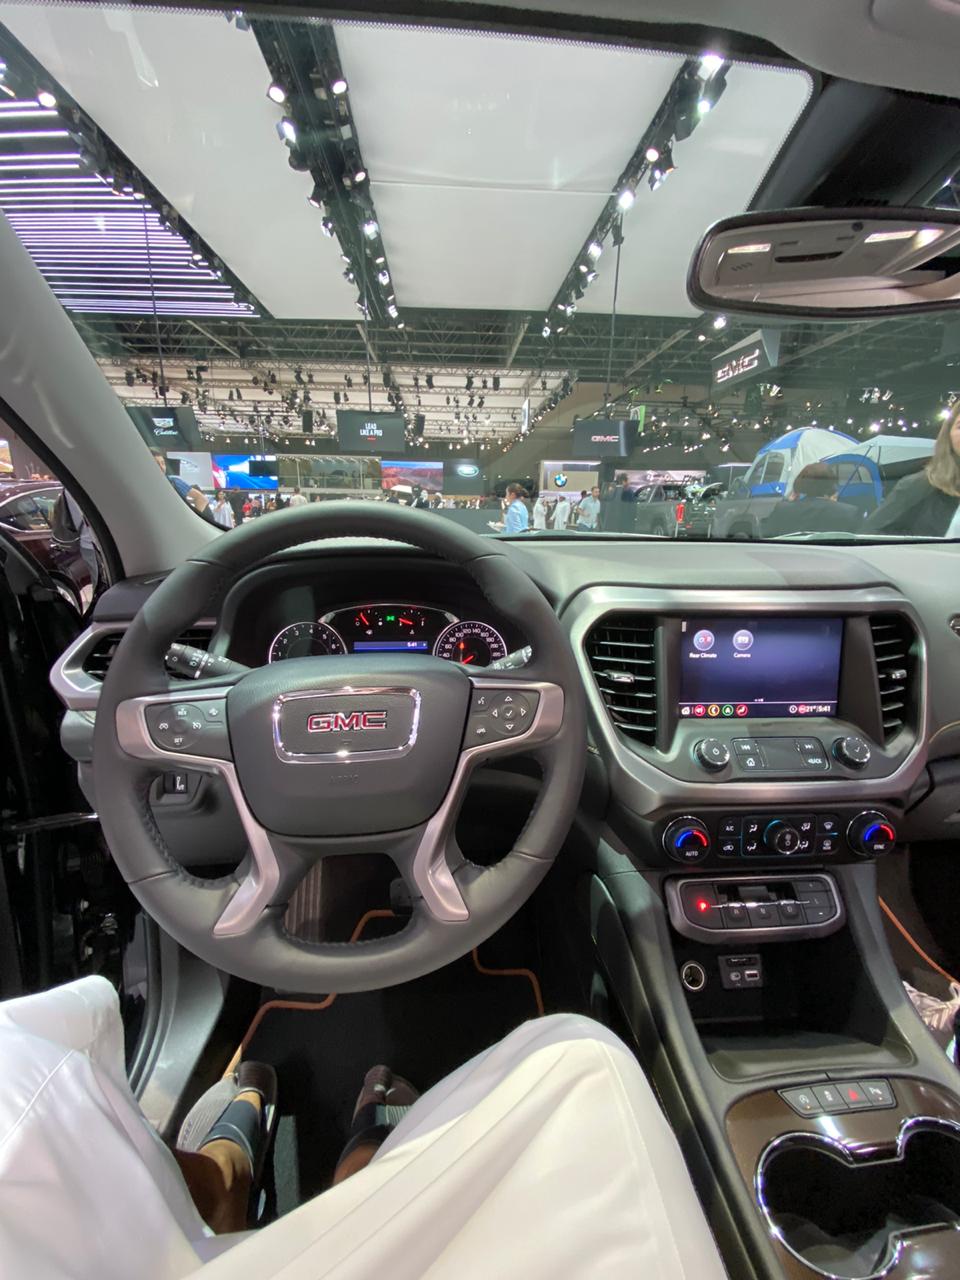 جي ام سي تستعرض اكاديا وسييرا 2020 في معرض دبي الدولي للسيارات 38